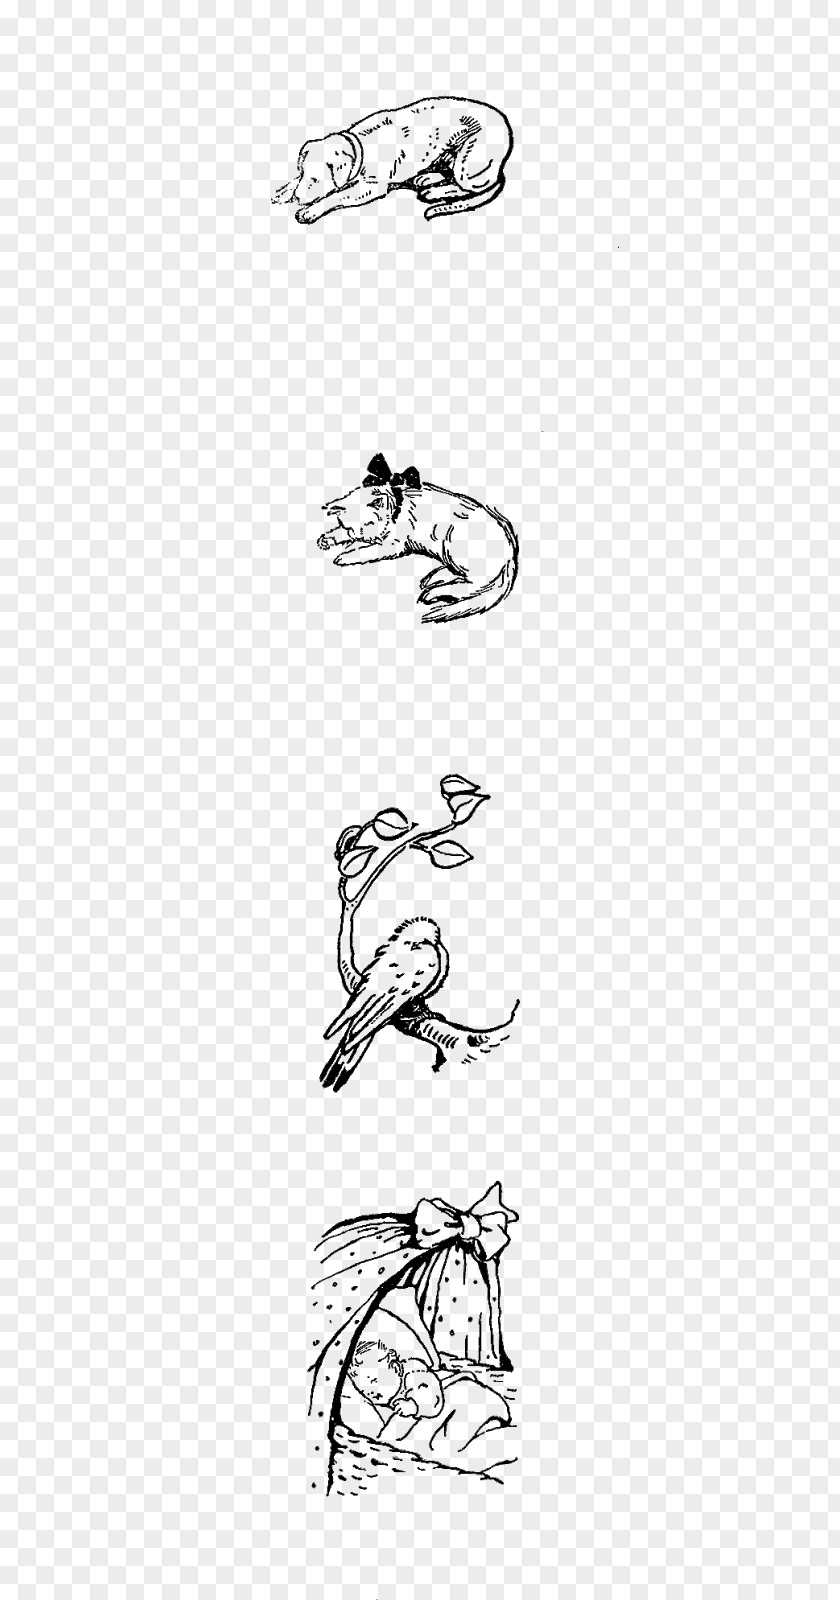 Sleeping Animal Line Art Cartoon Sketch PNG